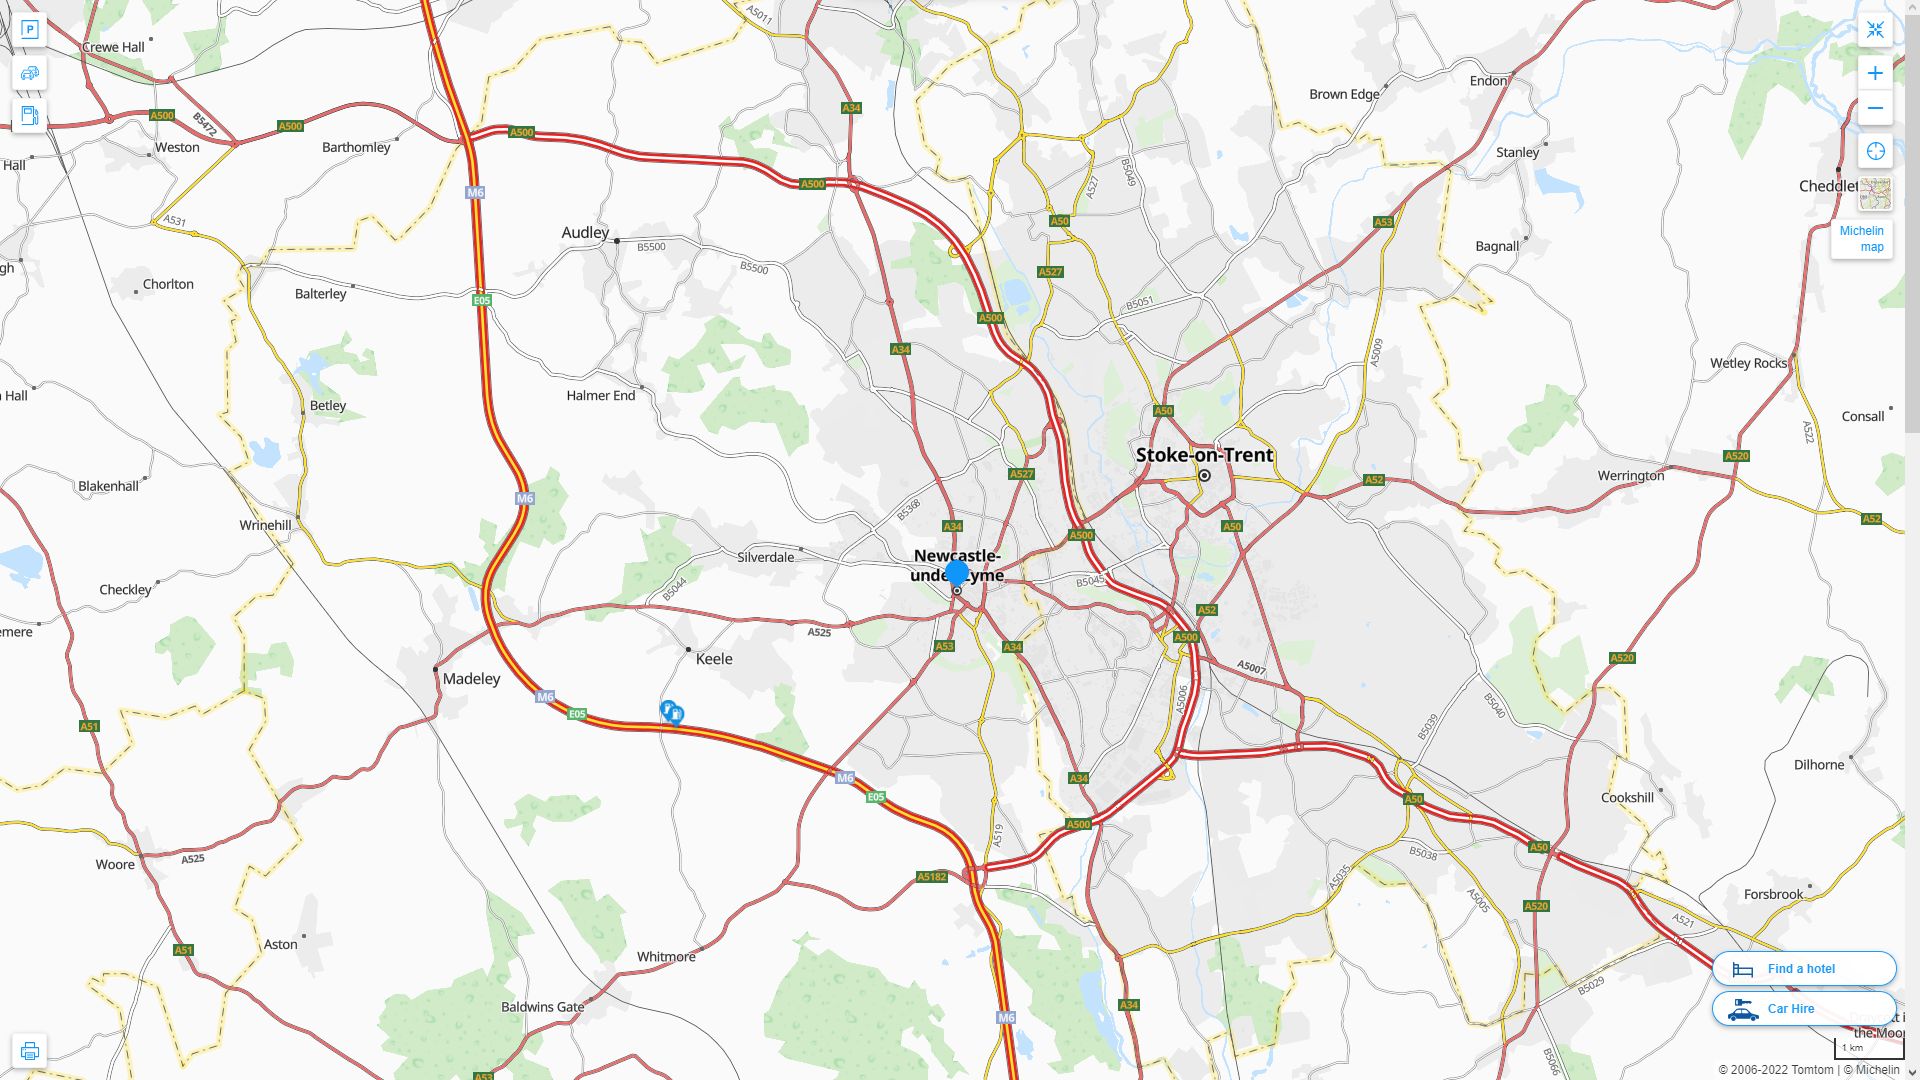 Newcastle under Lyme Royaume Uni Autoroute et carte routiere